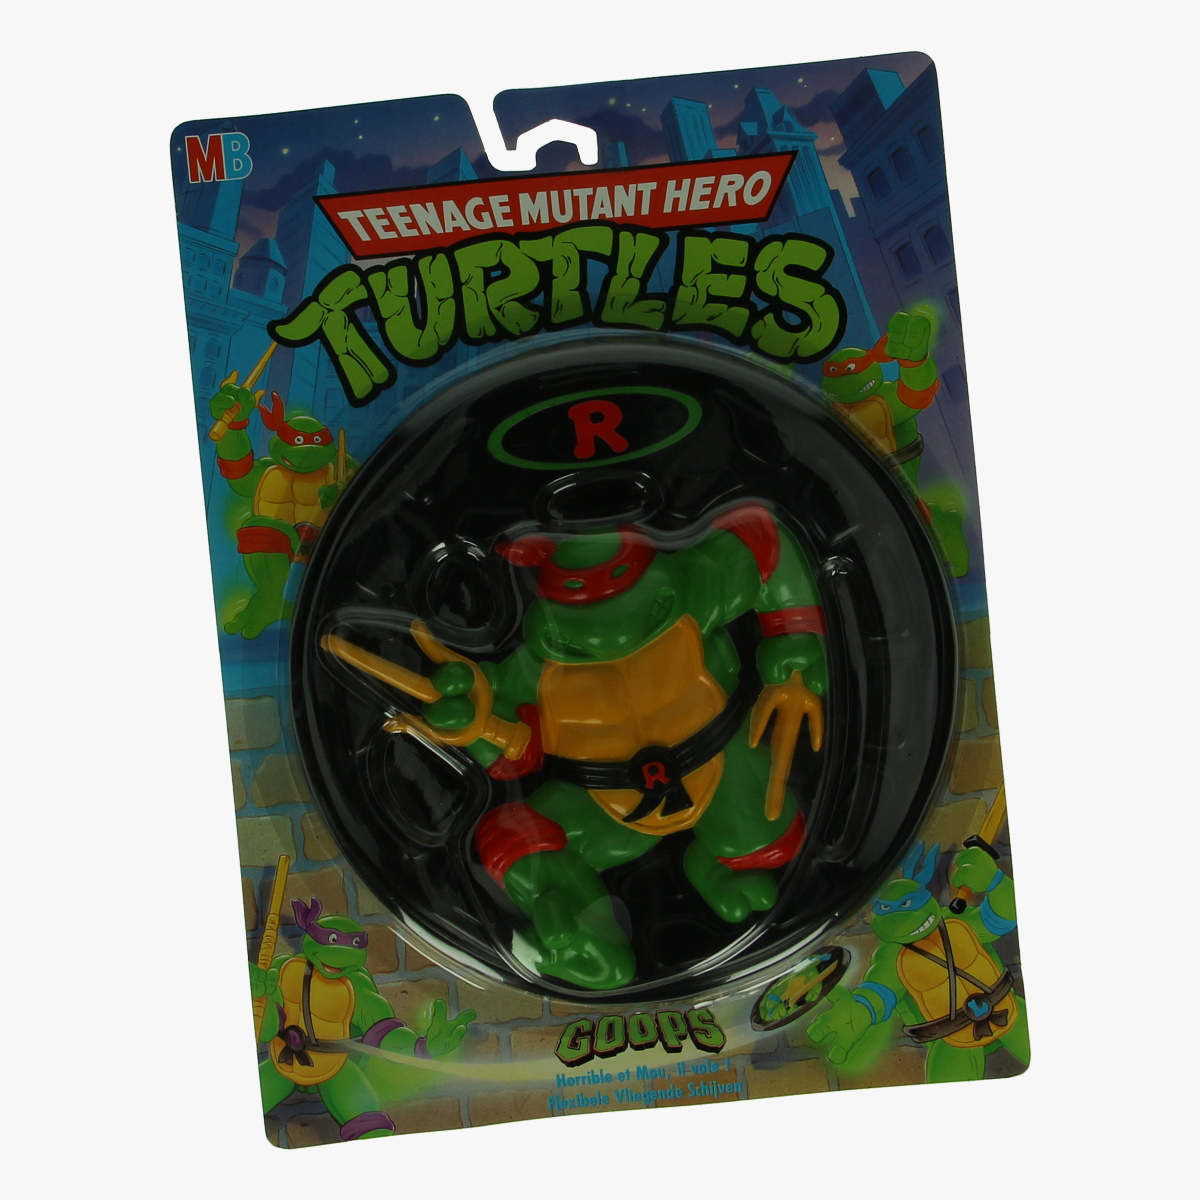 Afbeeldingen van Teenage mutant hero Turtles frisbee Raphael